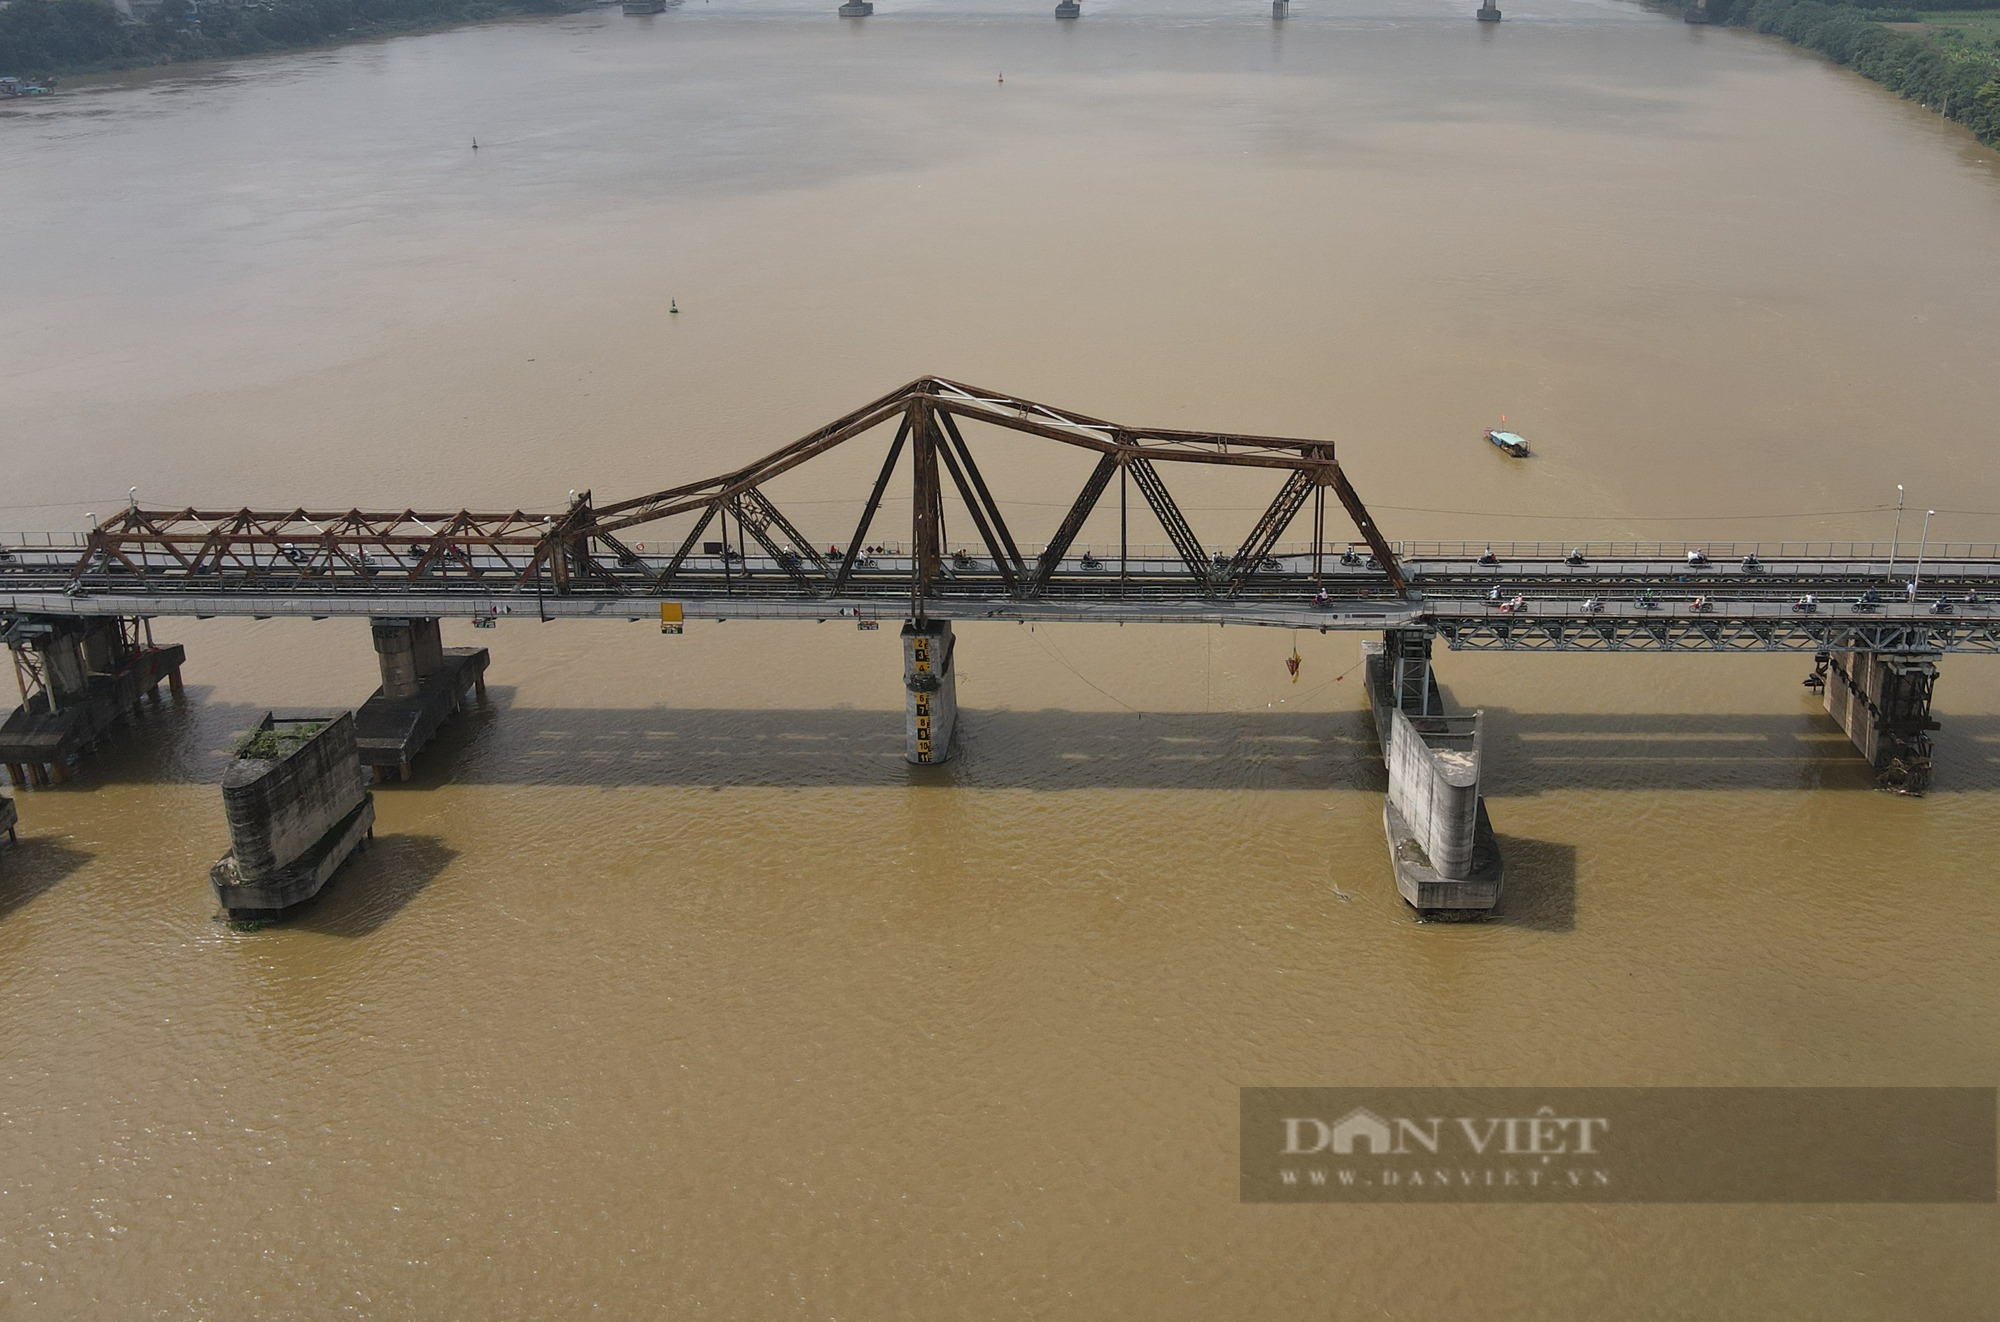 Cầu Long Biên, cây cầu bằng thép lớn tuổi nhất Việt Nam xuống cấp nghiêm trọng - Ảnh 4.